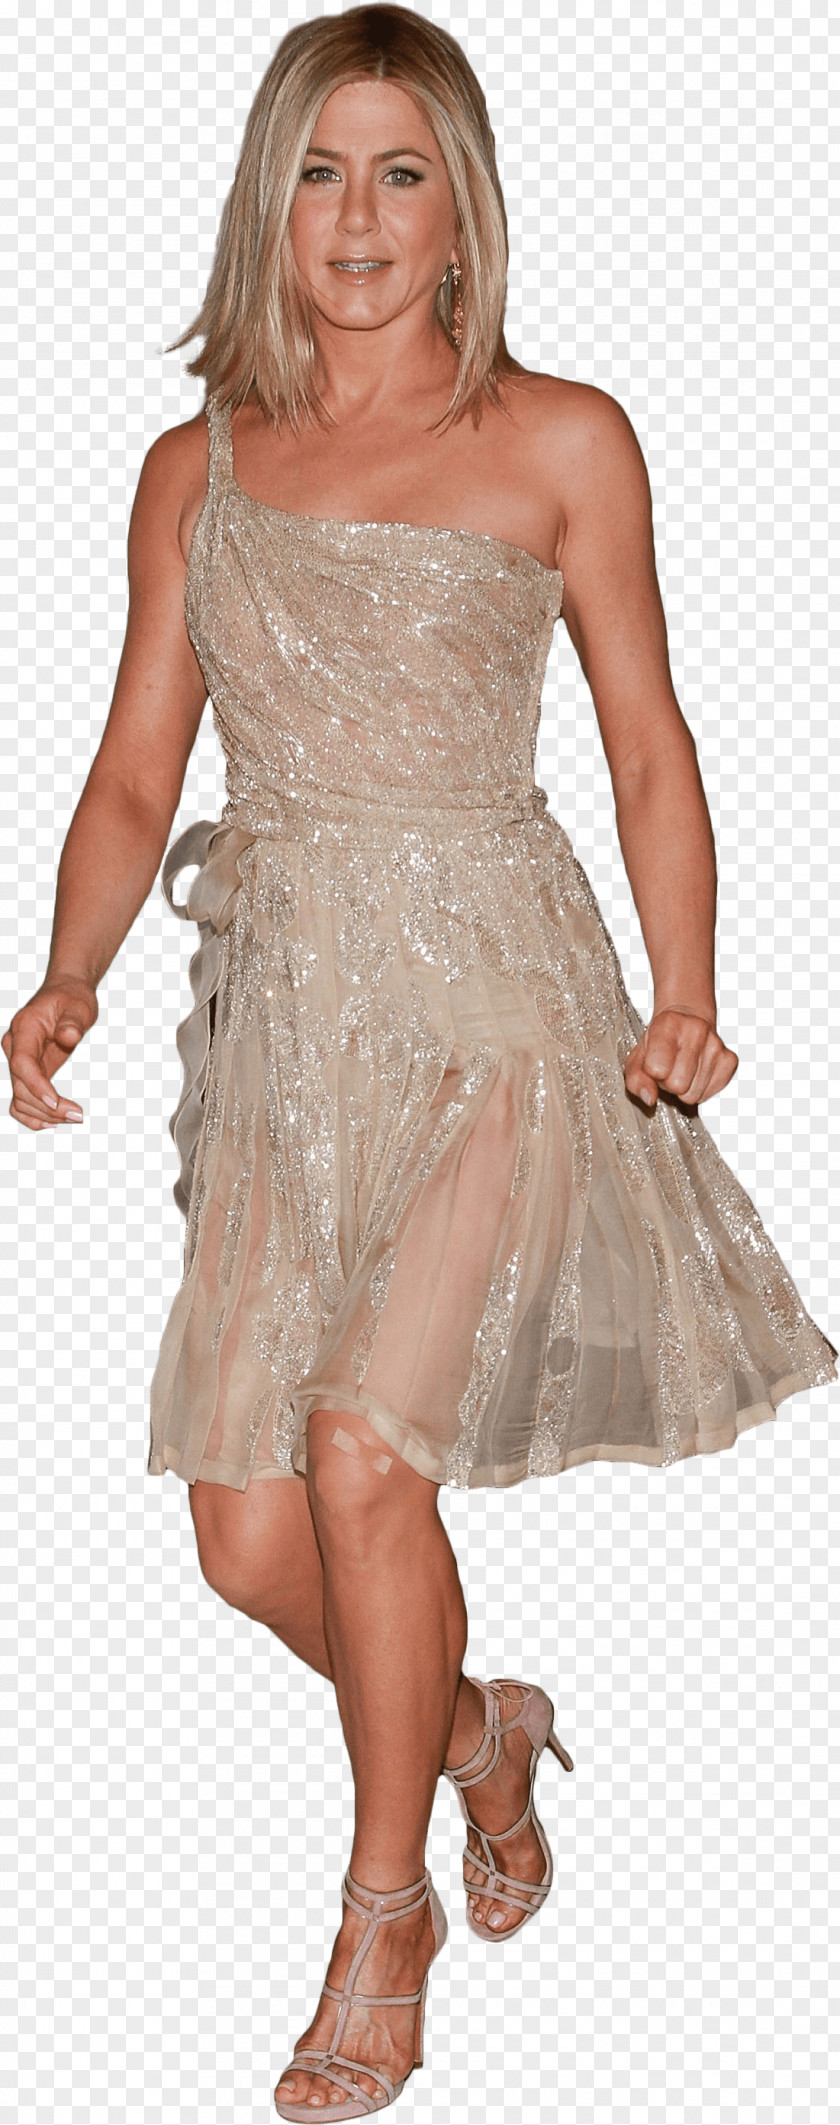 Walking Stick Jennifer Aniston Dress PNG